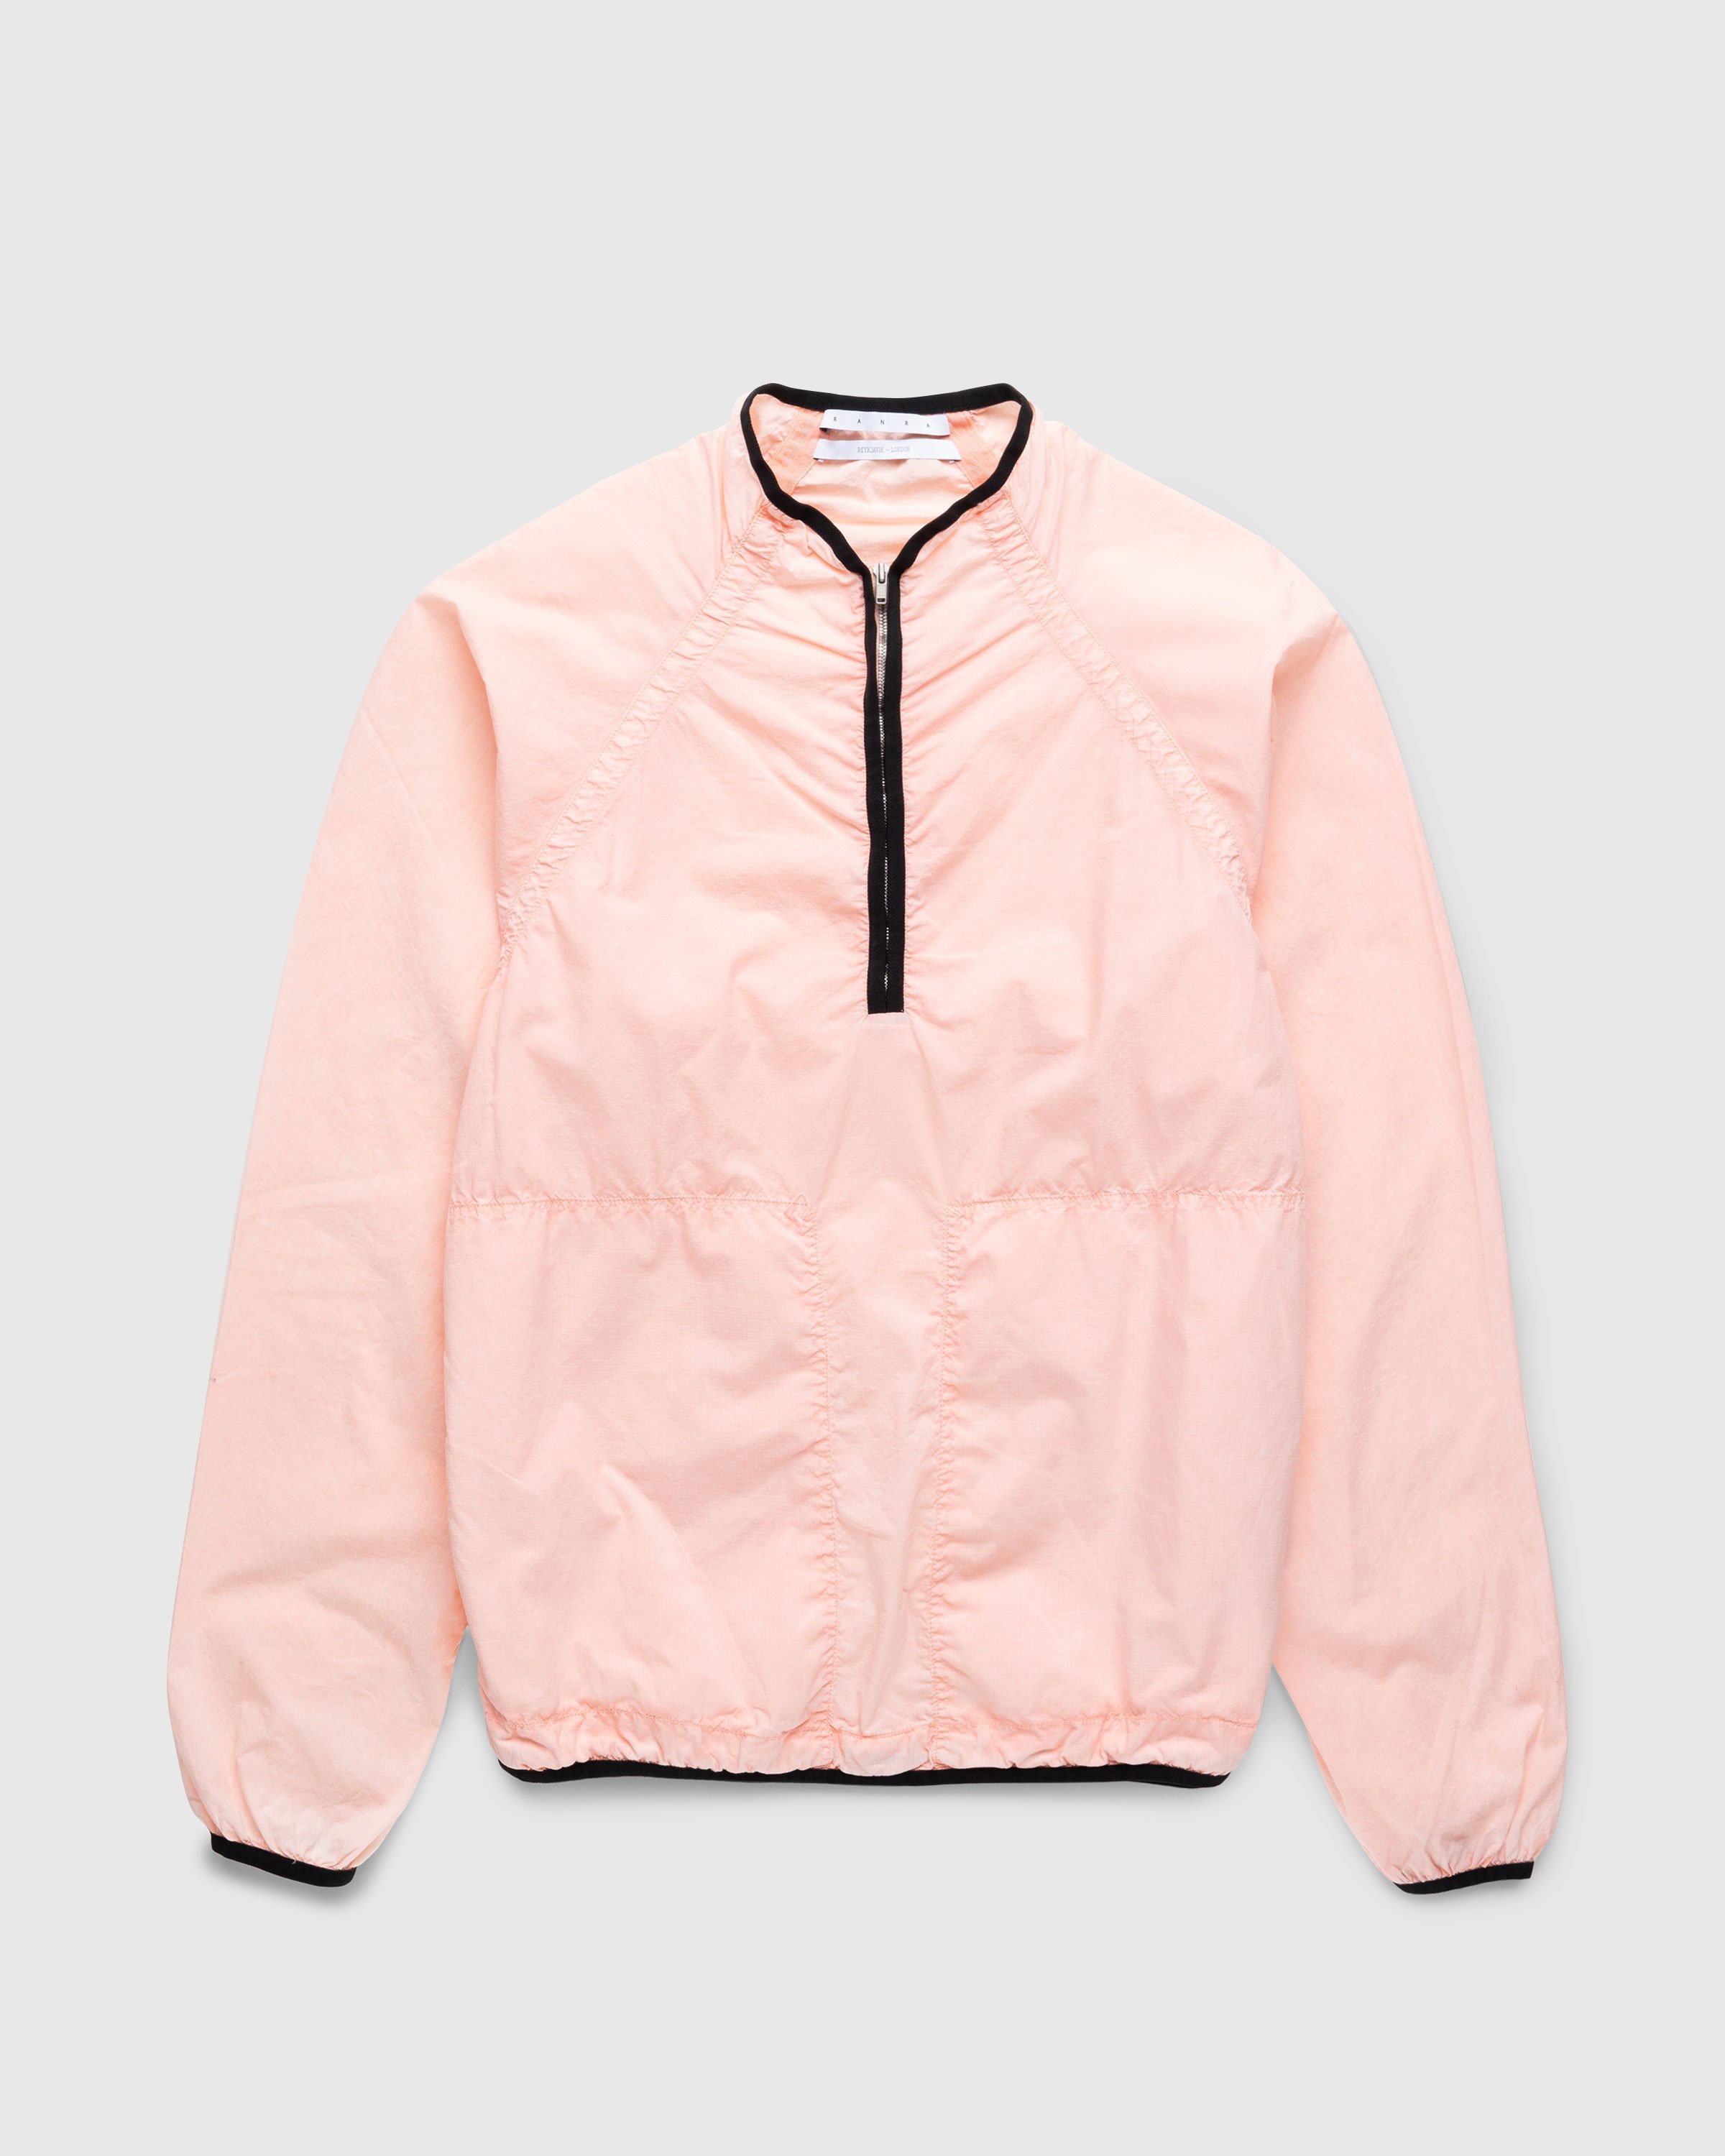 RANRA - Ganga Jacket Coral Pink - Clothing - Pink - Image 1